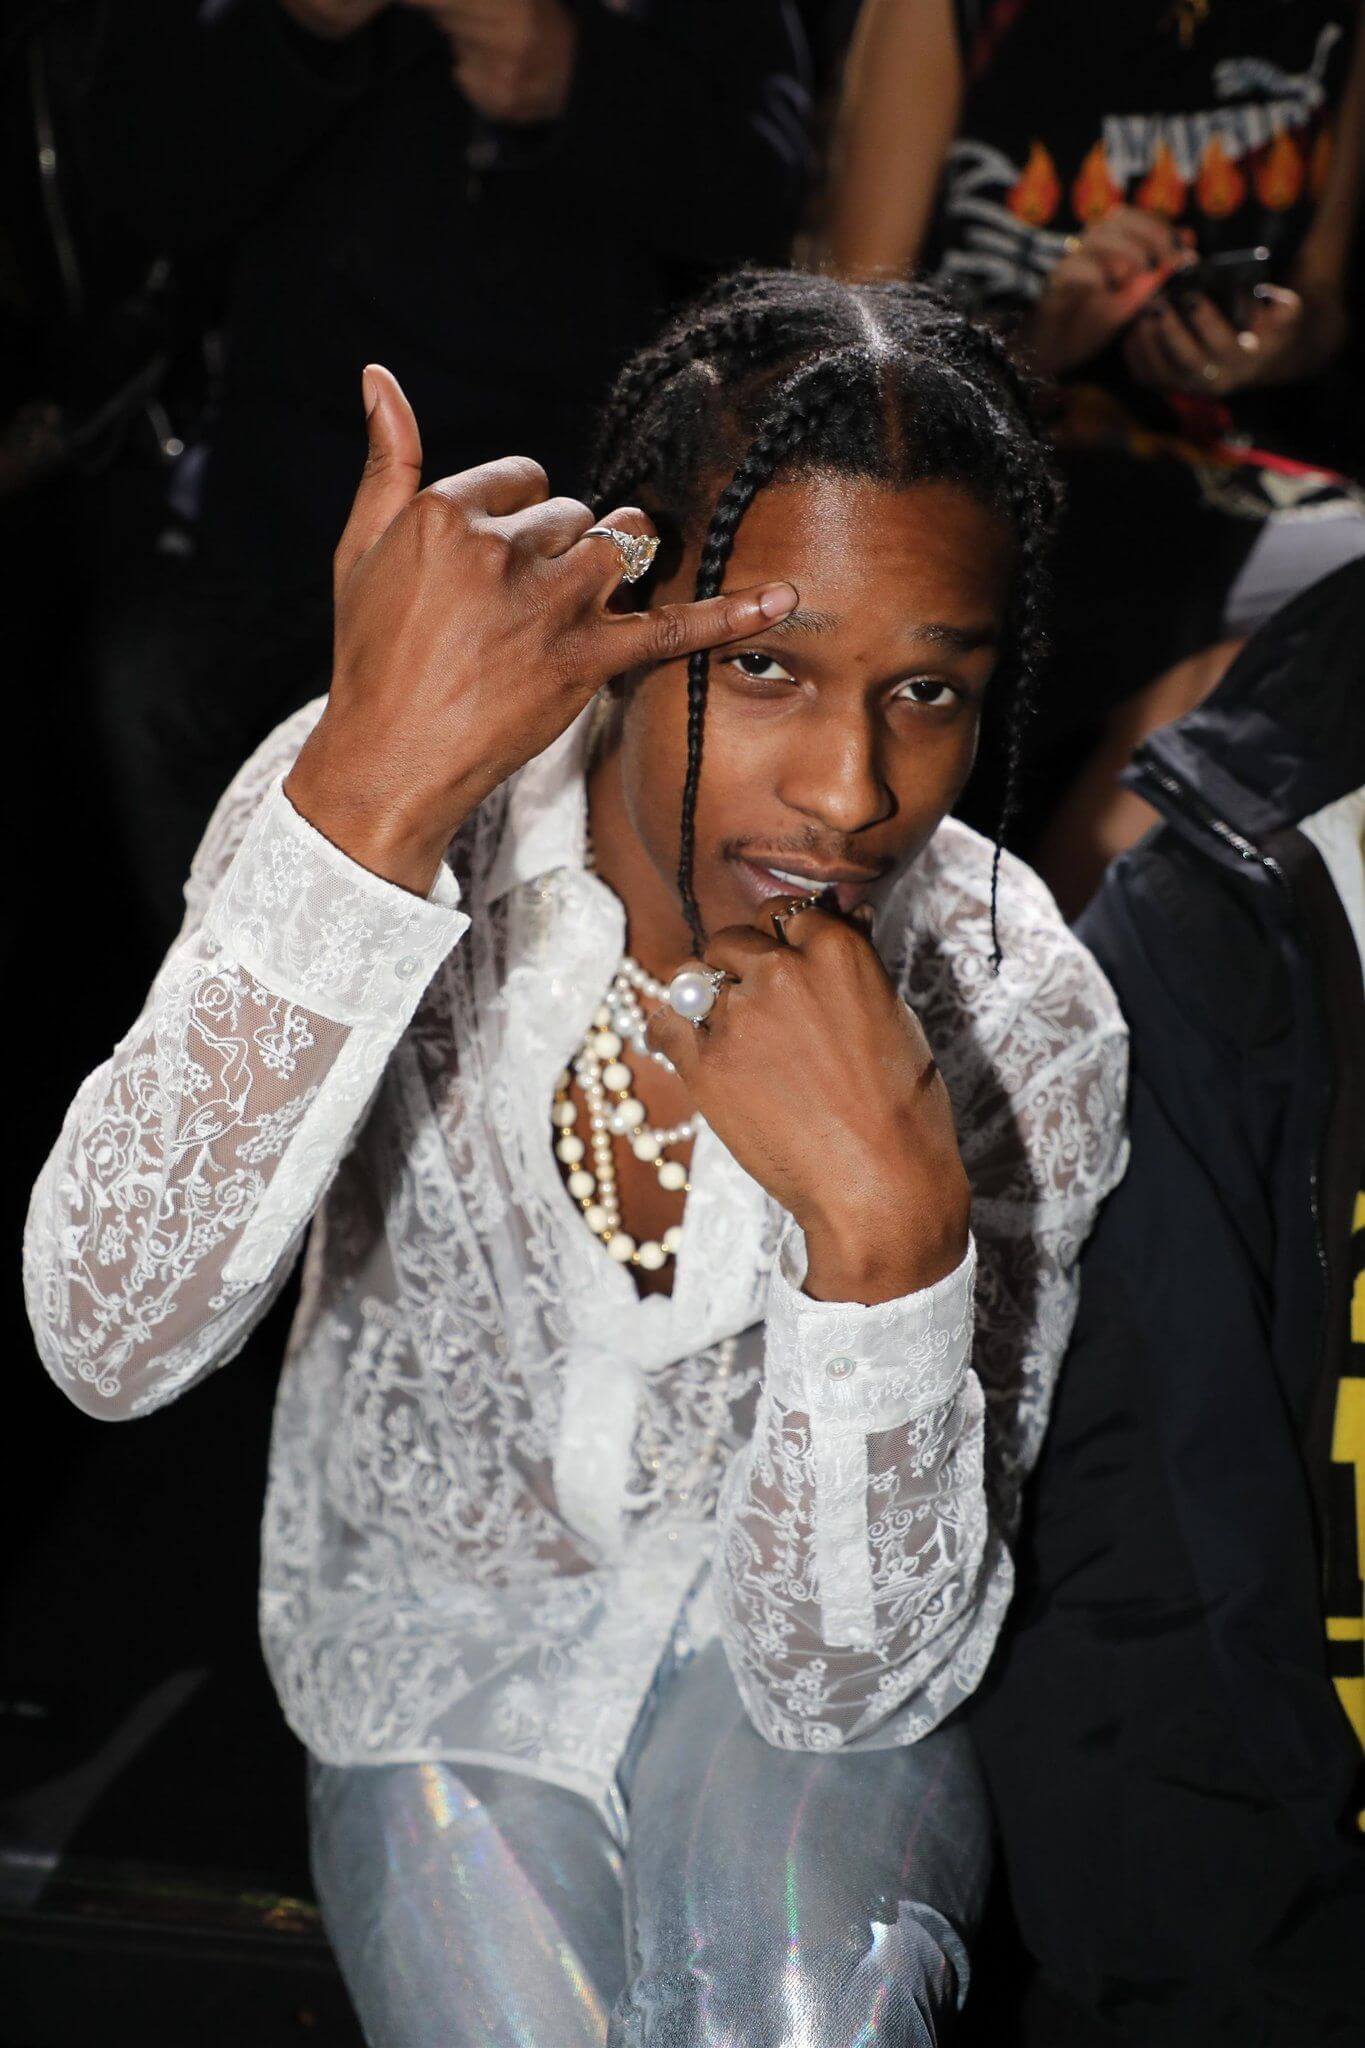 像A$AP Rocky般陽剛的嘻哈歌手，穿上喱士襯衫戴珍珠配飾，當中的衝突美感別具型格。